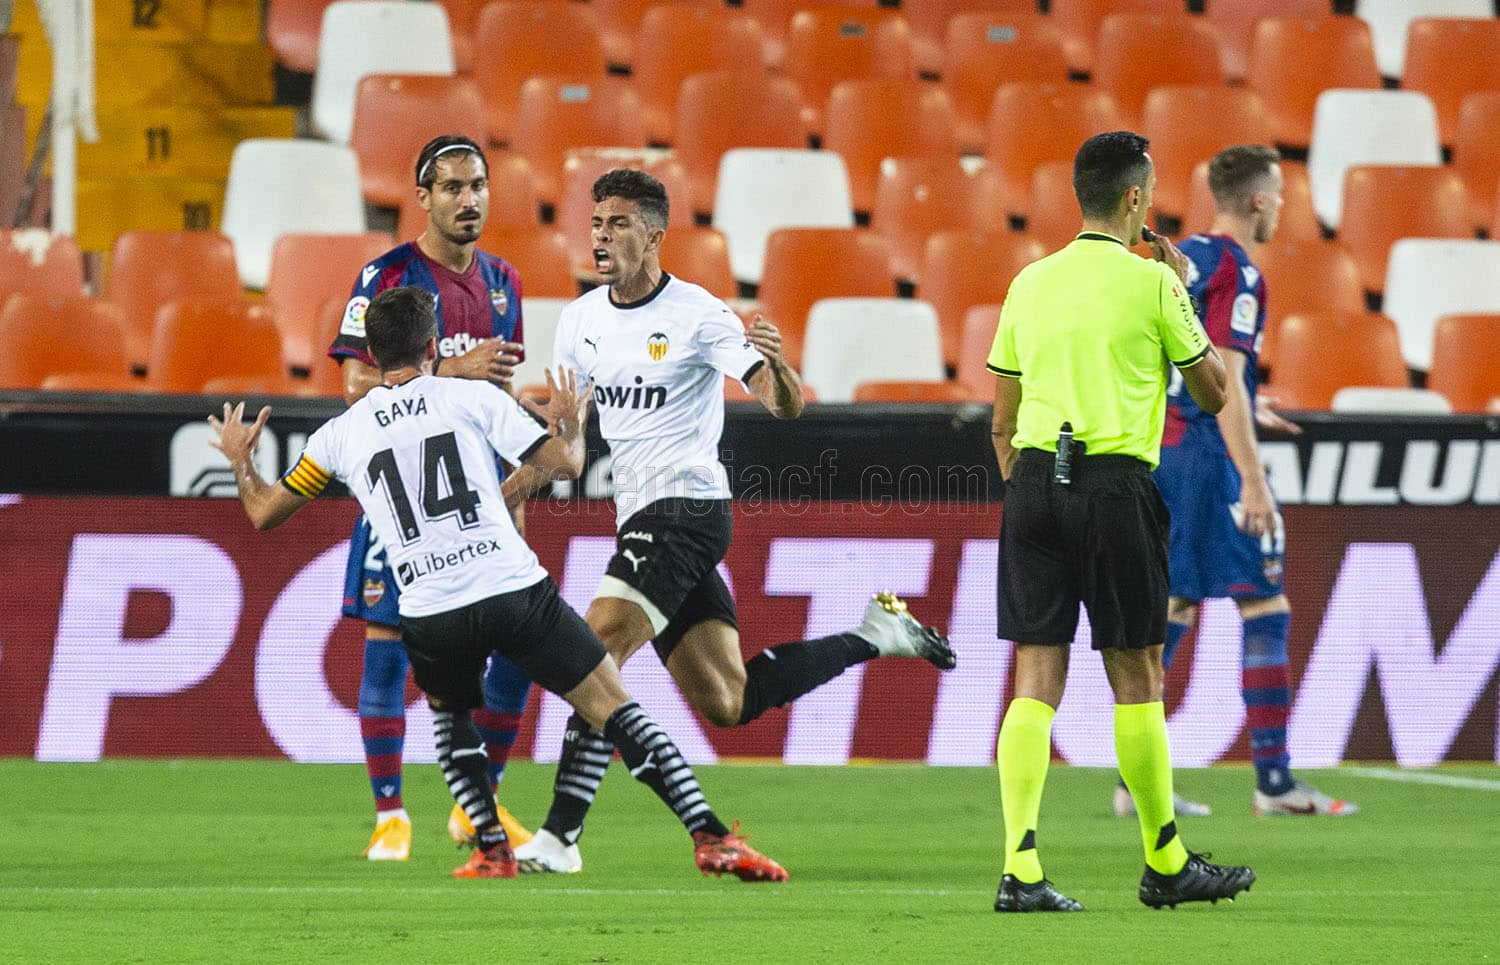 El Valencia CF empieza LaLiga ganando con 4 goles 7TeleValencia